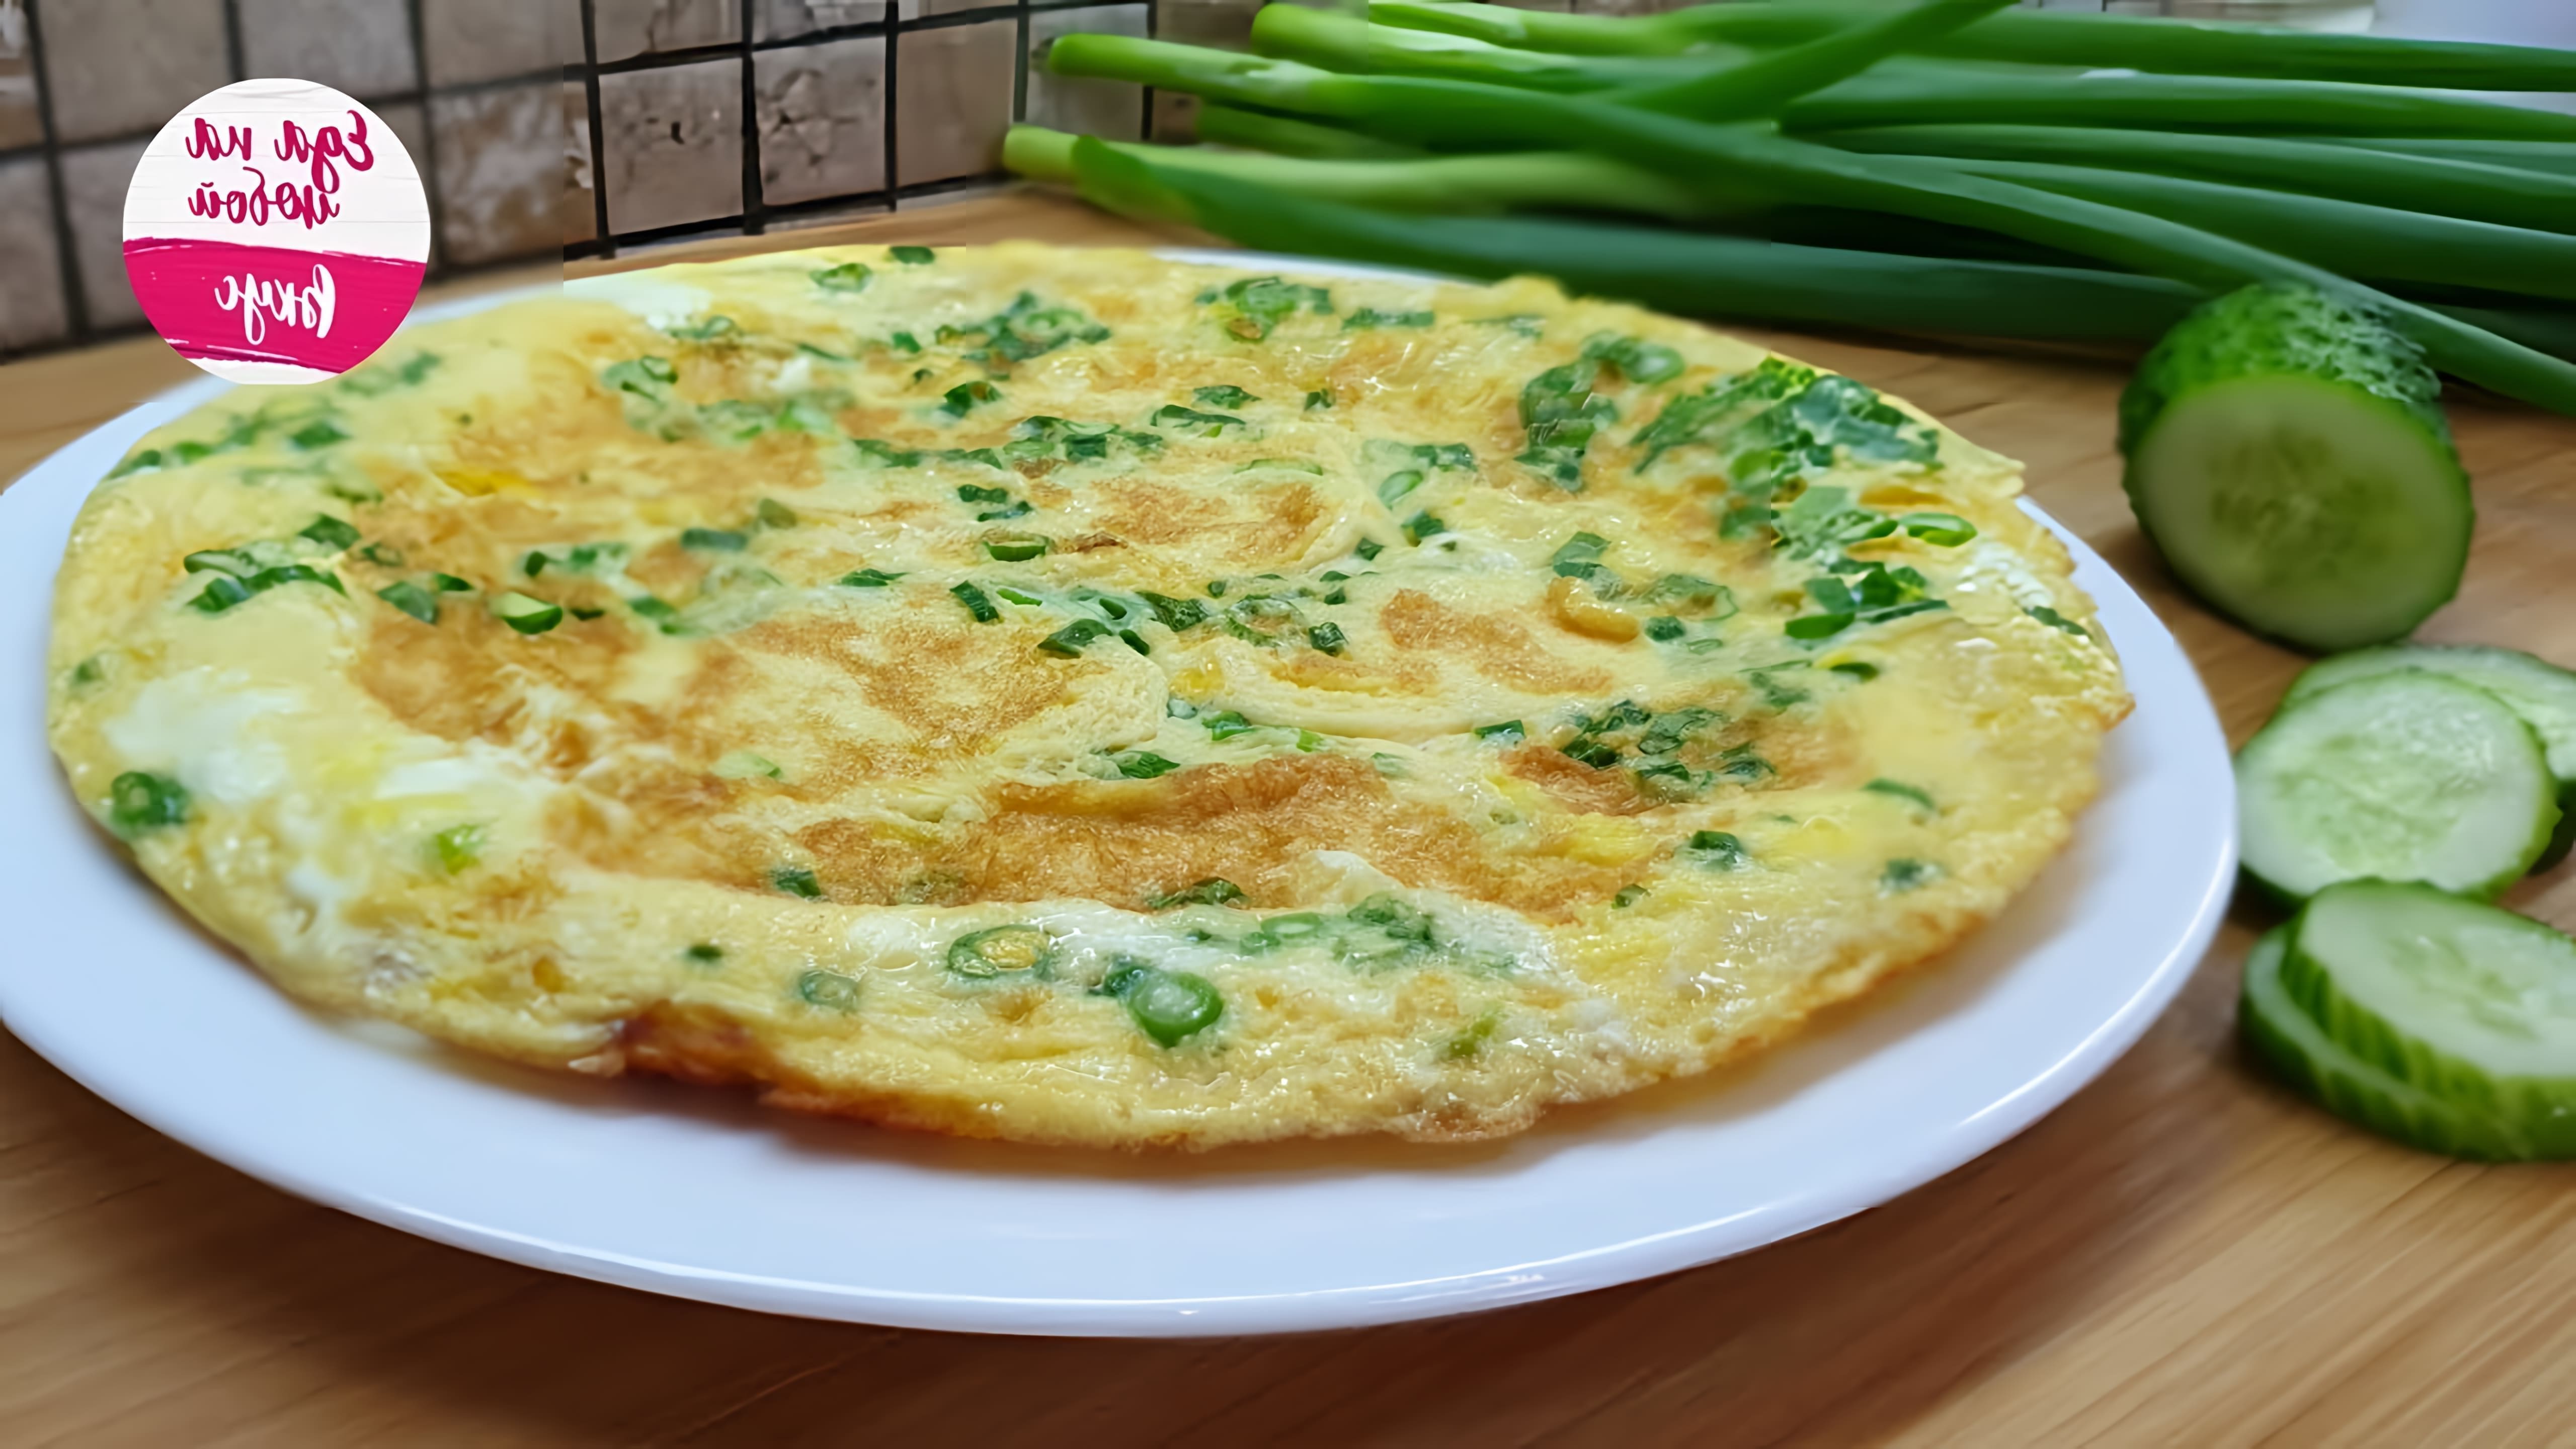 В этом видео демонстрируется быстрый и простой рецепт завтрака или перекуса из картофеля и яиц